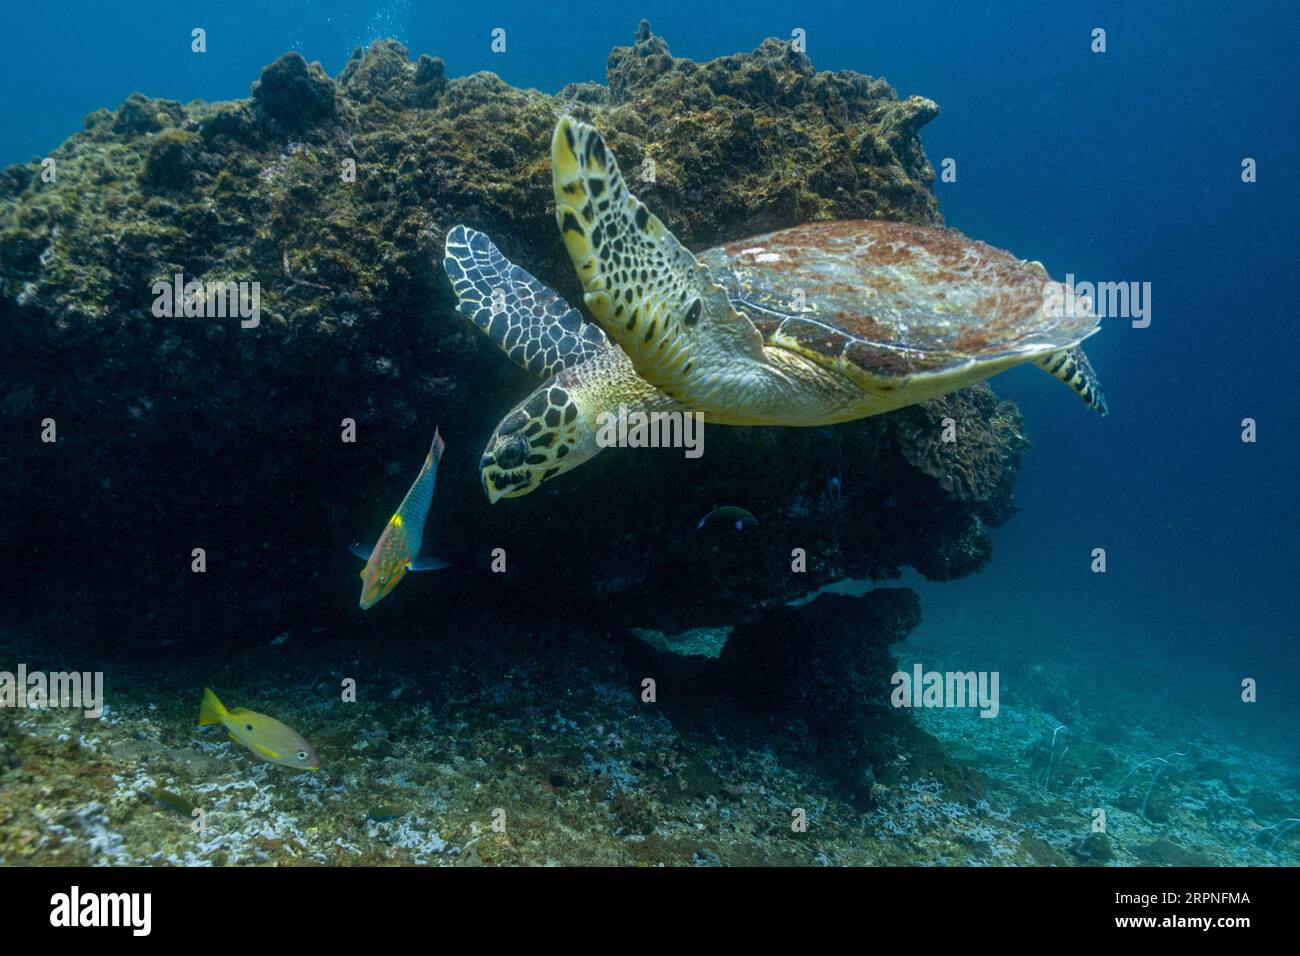 Une tortue hawksbill nageant sous l'eau. Îles Koh Phi Phi, Thaïlande Banque D'Images